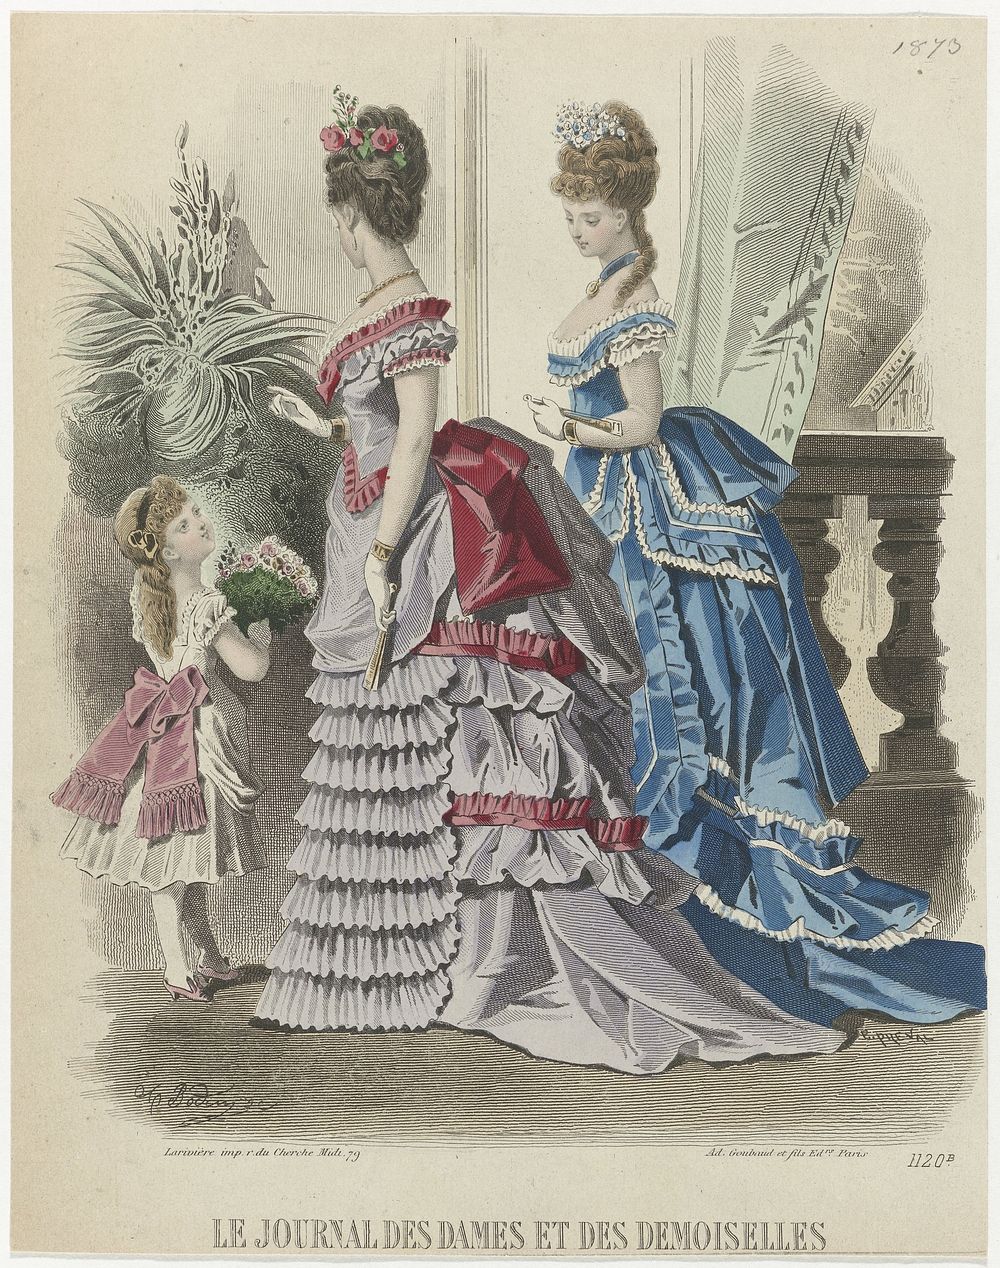 Le Journal des Dames et des Demoiselles, 1873, No. 1120b (1873) by A Bodin, Emile Préval, Ad Goubaud et Fils and Larivière